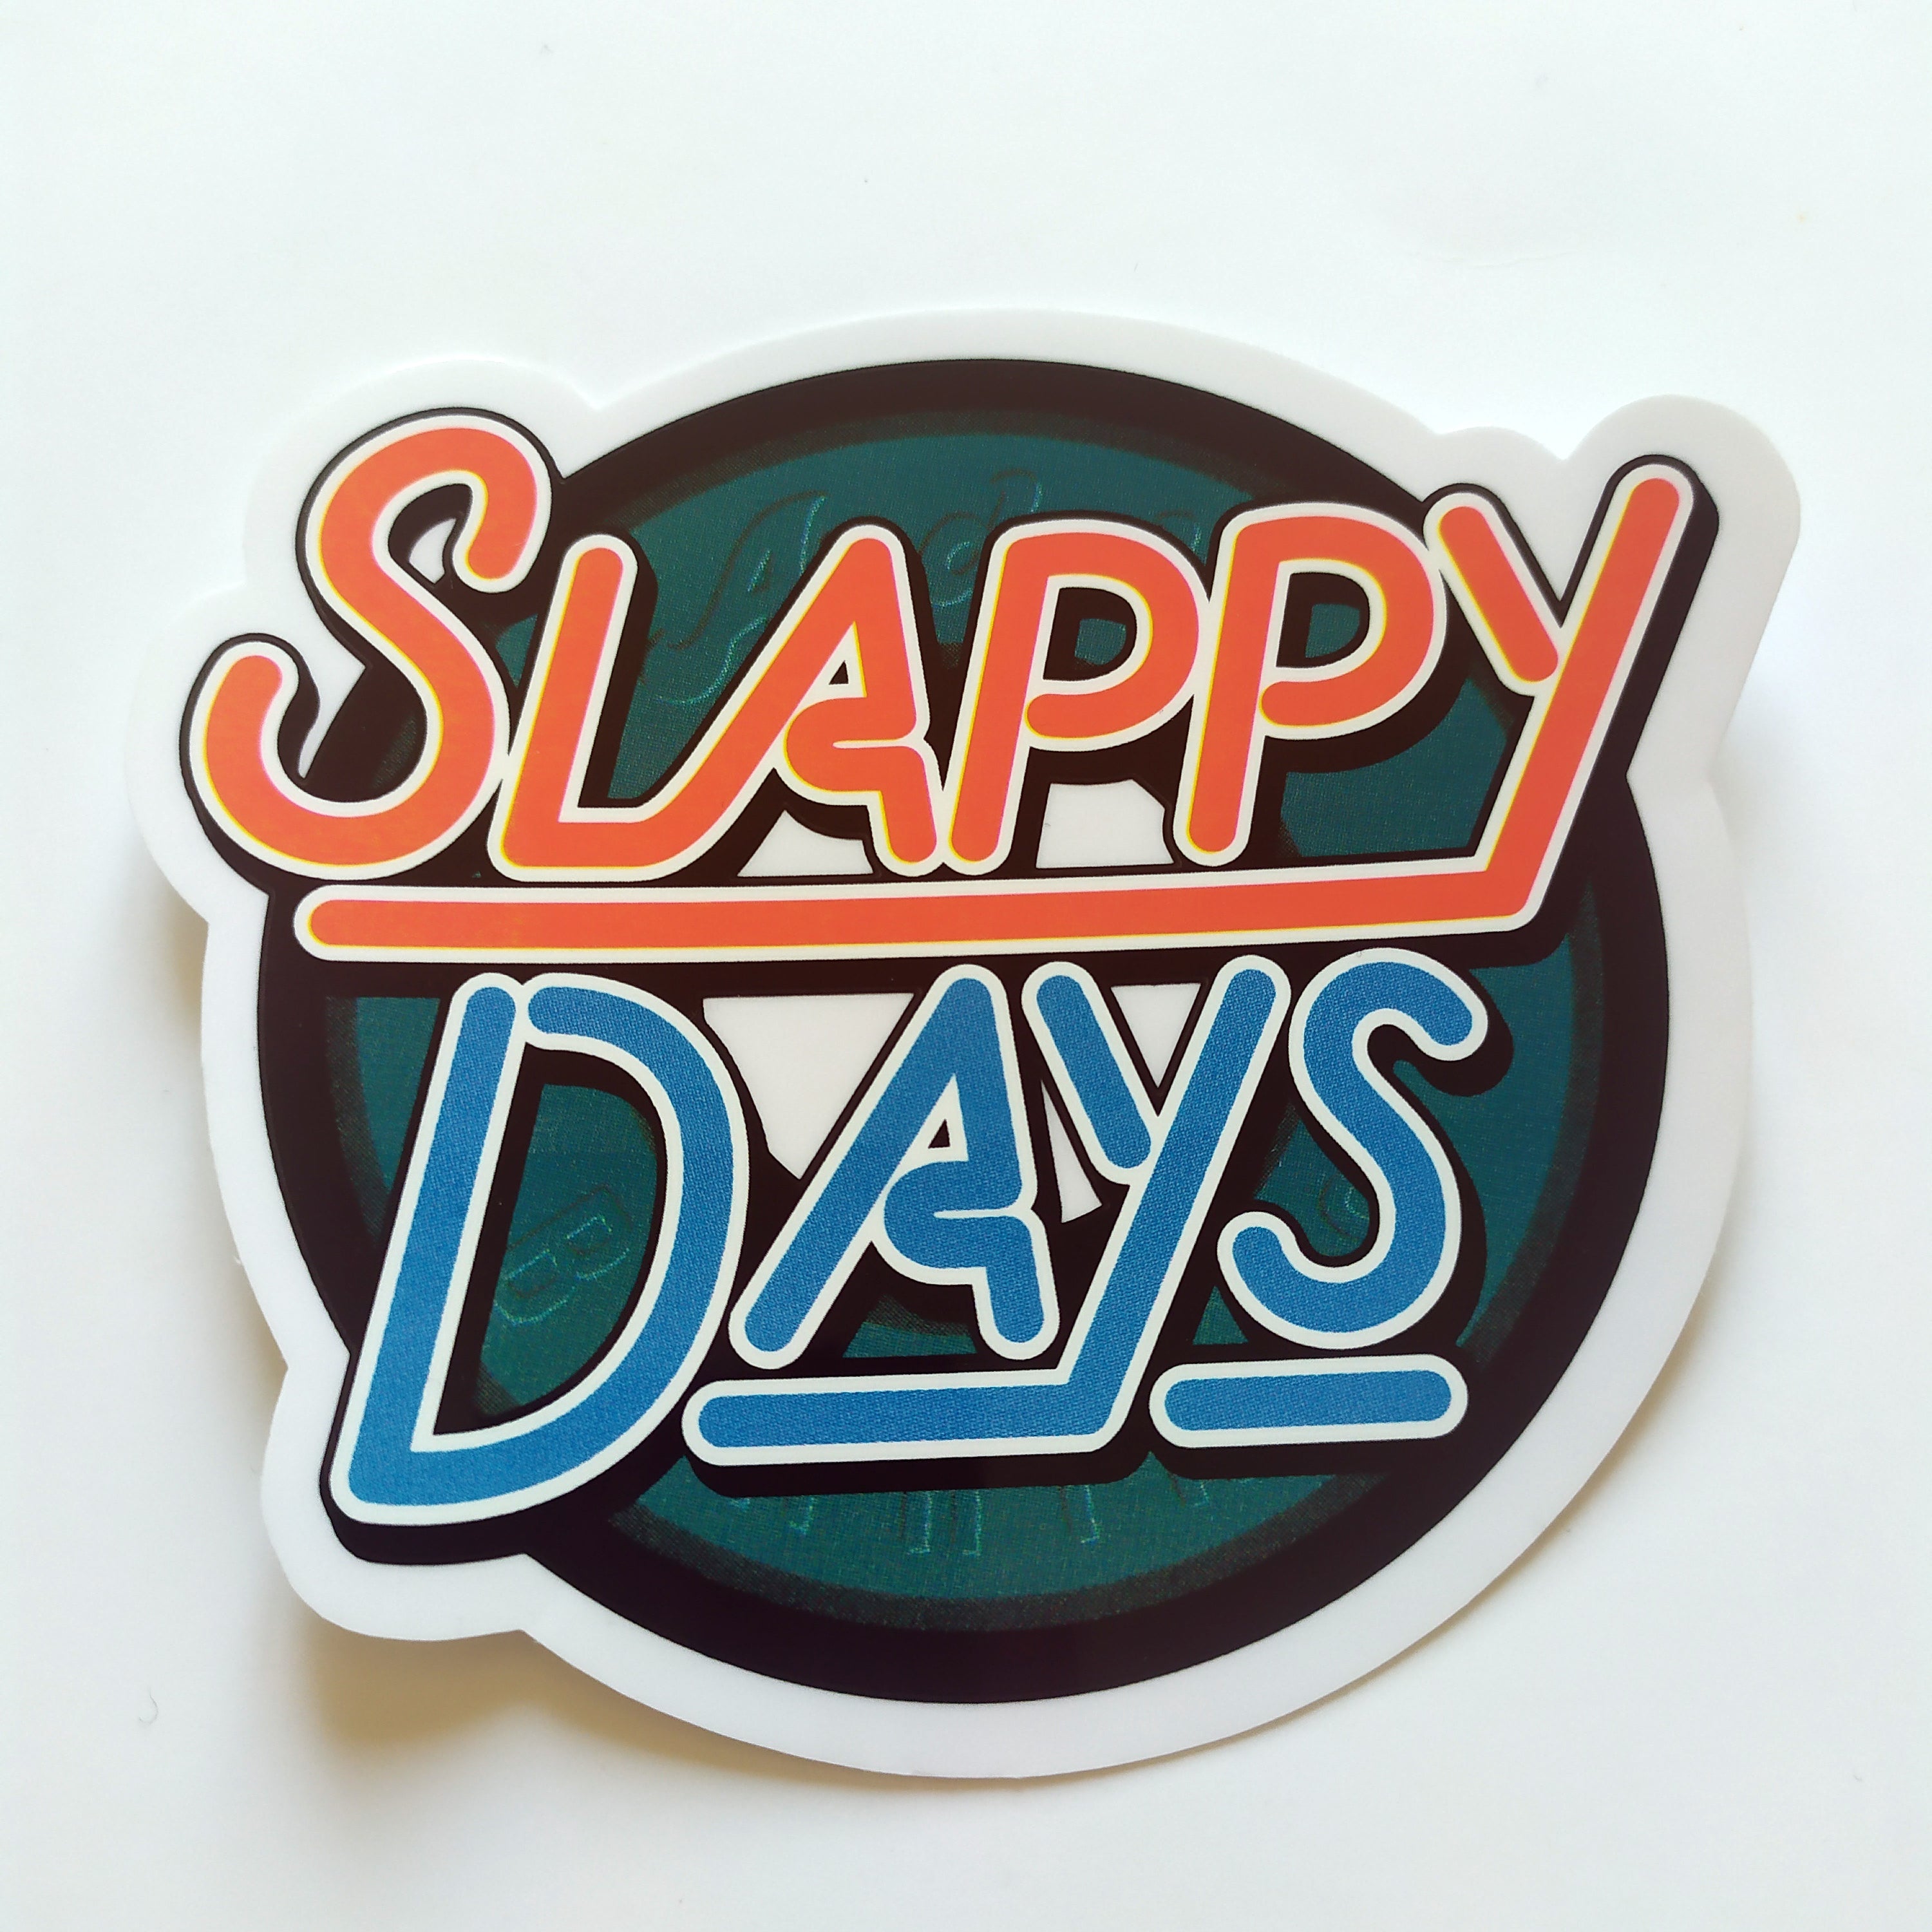 Andale Bearings Skateboard Sticker - "Slappy Days" - 9.5cm across approx - SkateboardStickers.com